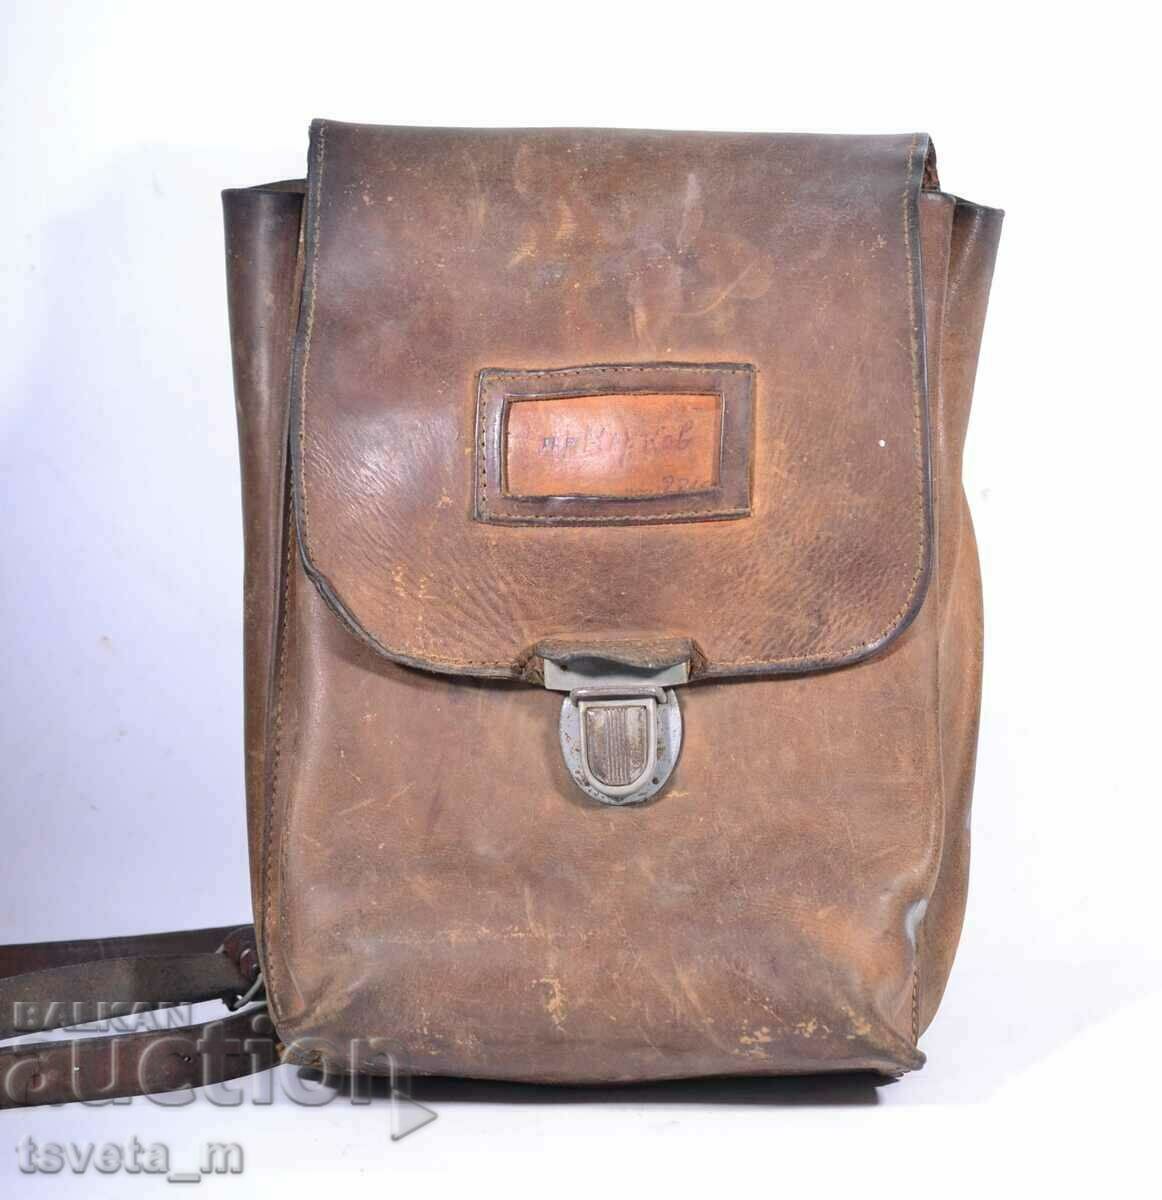 Δερμάτινη τσάντα αξιωματικού πεδίου tablet BNA, soc